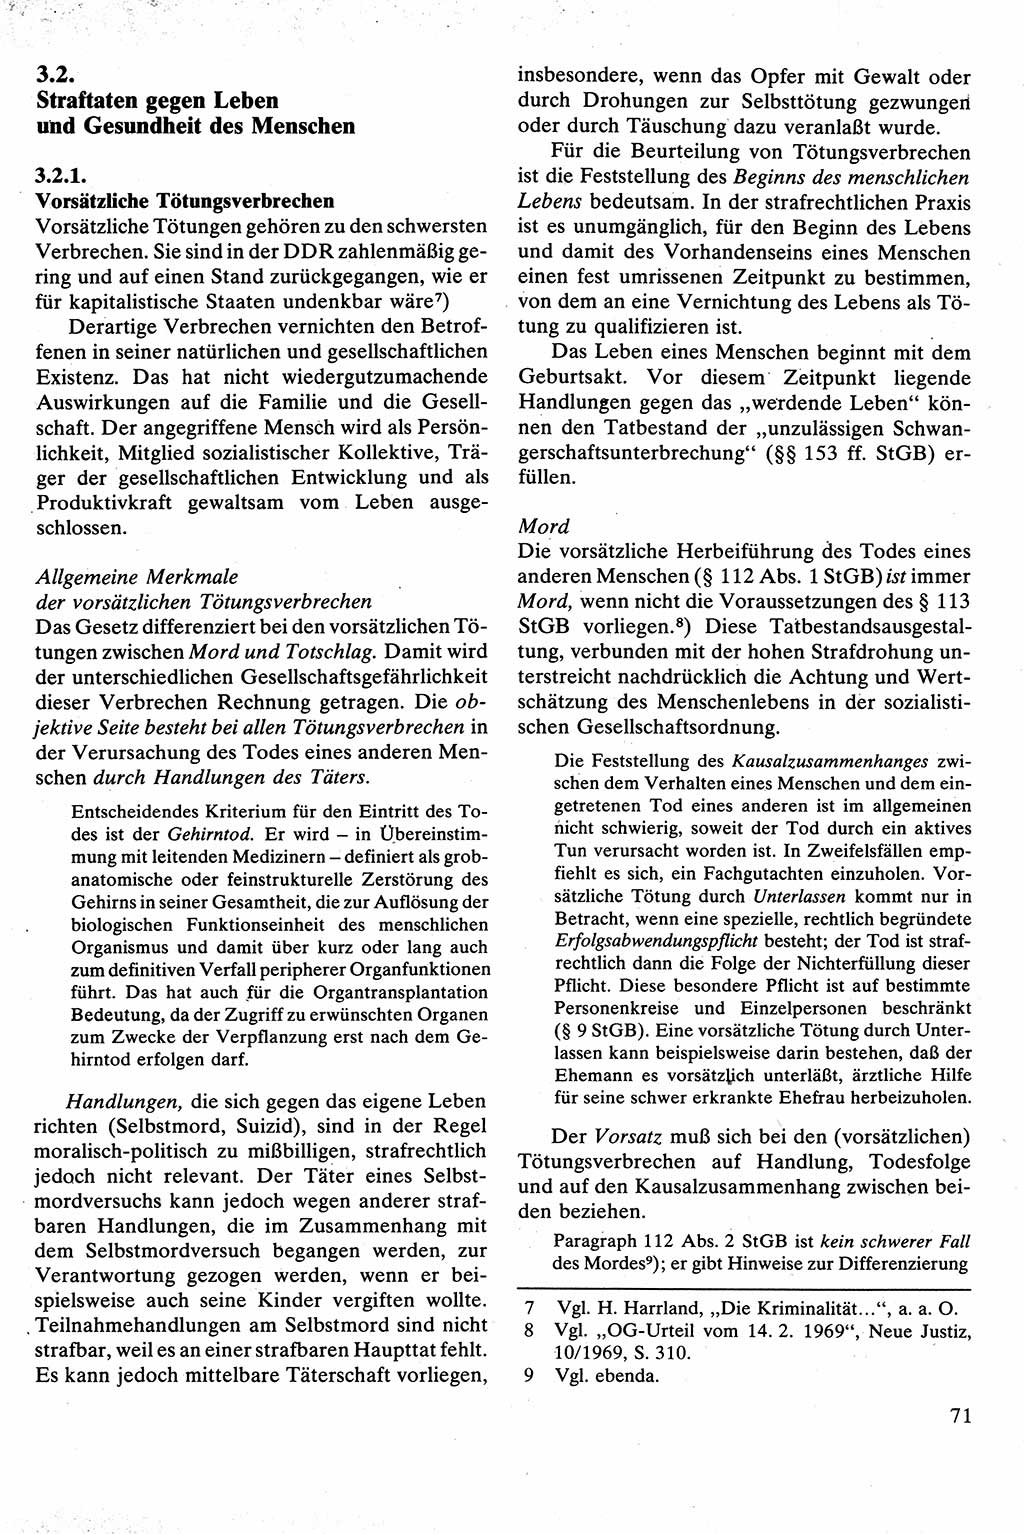 Strafrecht [Deutsche Demokratische Republik (DDR)], Besonderer Teil, Lehrbuch 1981, Seite 71 (Strafr. DDR BT Lb. 1981, S. 71)